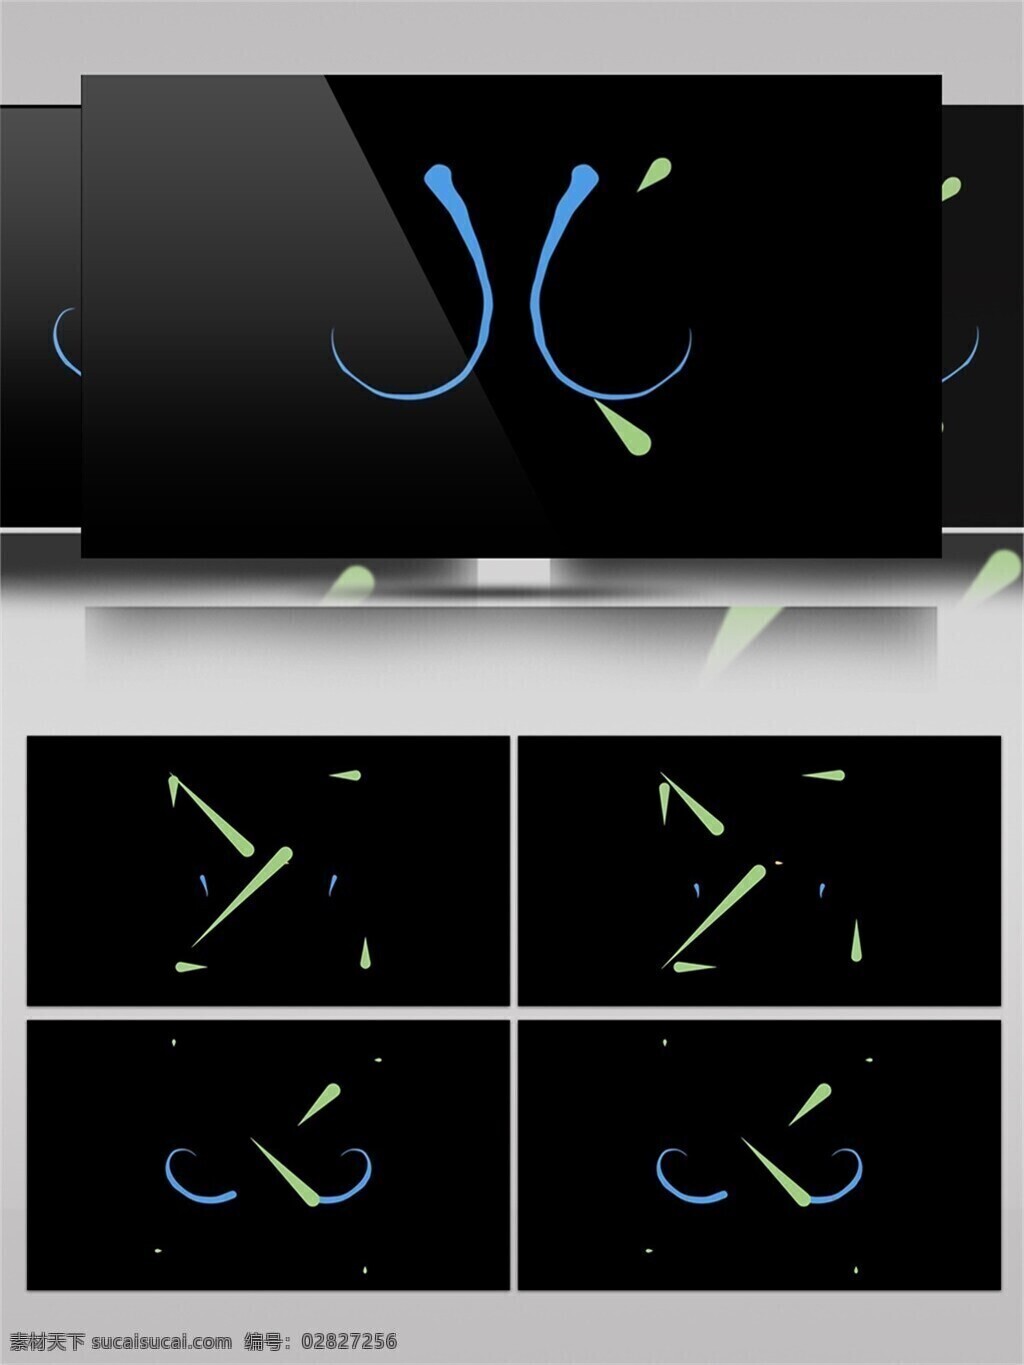 多彩 图形创意 卡通动画 蓝色 绿色 线条 动感 运动 视频素材 动态 结合 活力 形状